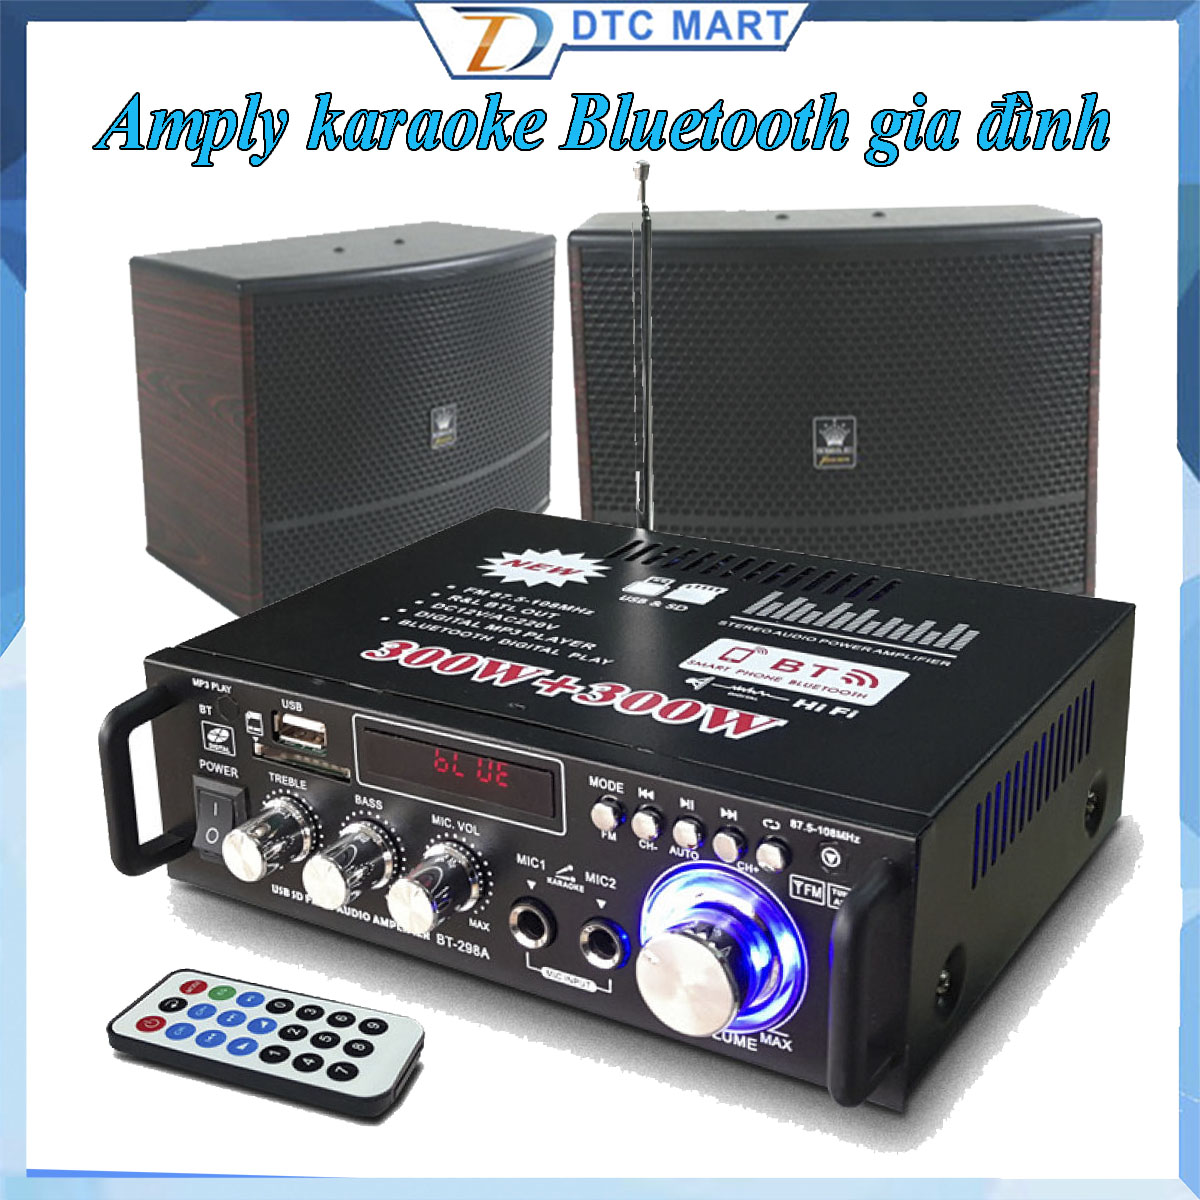 Âm ly mini Amply karaoke Bluetooth gia đình Amly Mini Bluetooth BT-298A Công Suất 2 Kênh 600W Tự Động Lọc Nhiễu và Tạp Âm  Âm Thanh Chuyên Nghiệp Công nghệ hiện đại tiện lợi. Bảo Hành Uy Tín